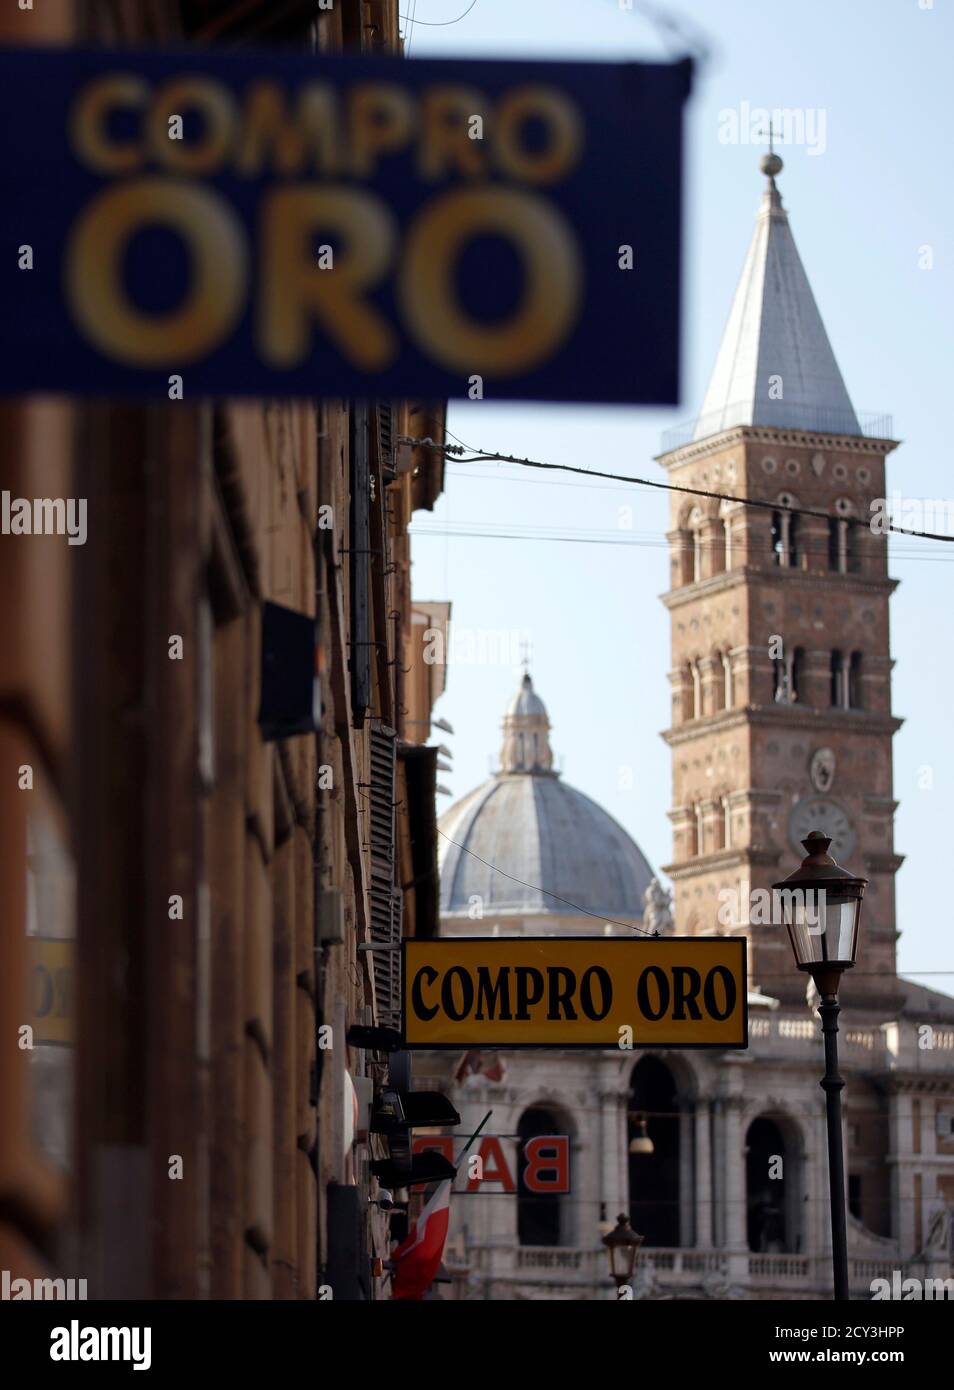 Zeichen, die Werbung für die Dienstleistungen von einem Pfandleiher, der lautet "Ich kaufe Gold", im Zentrum von Rom, 17. August 2012 gesehen werden. Innenstädte werden transformiert wie traditionelle Geschäfte pleite, ihre Zeichen ersetzt durch diejenigen, die gehen 'Compro Oro', oder "Ich Gold kaufen" anzukündigen. Das Eurispes-Thinktank schätzt, dass die Zahl der "Compro Oro" Shops in den letzten zwei Jahren vervierfacht hat. Die Verbreitung von Pfandleiher, mit einem geschätzten Jahresumsatz von 7 Milliarden Euro, ist ein sehr sichtbares Zeichen, das für Millionen Italiener Leben zum Schlechteren verändert hat. Bild 17. August 2012. Entsprechend der Funktion Italien-PA Stockfoto